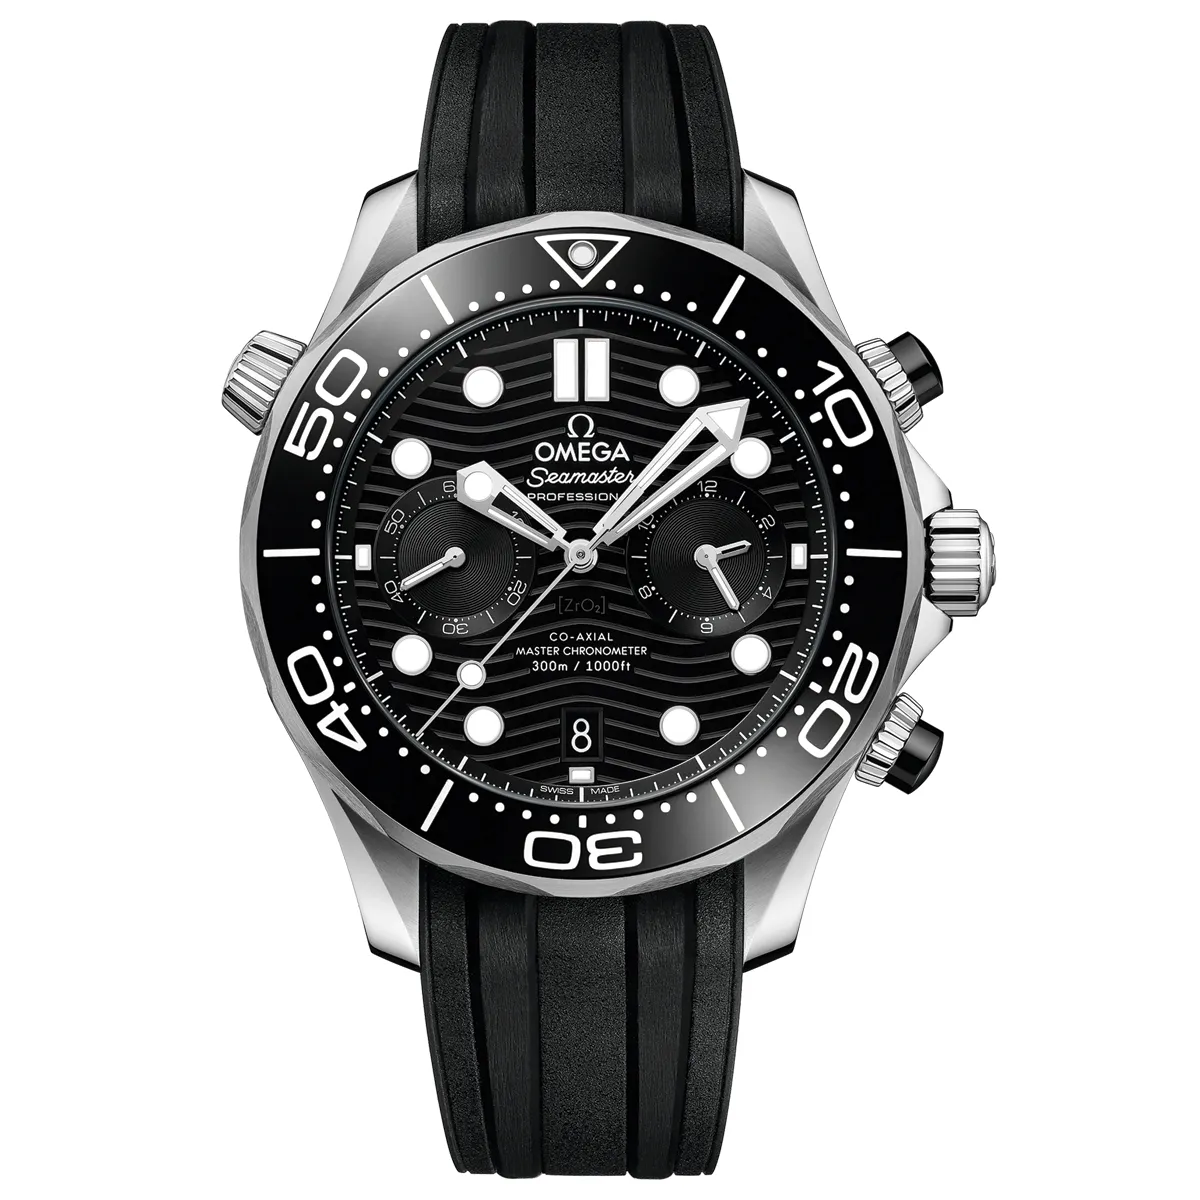 Đồng Hồ Omega Seamaster Diver Master Chronometer Chronograph 210.32.44.51.01.001 mặt số màu đen. Dây đeo bằng cao su. Thân vỏ bằng thép.